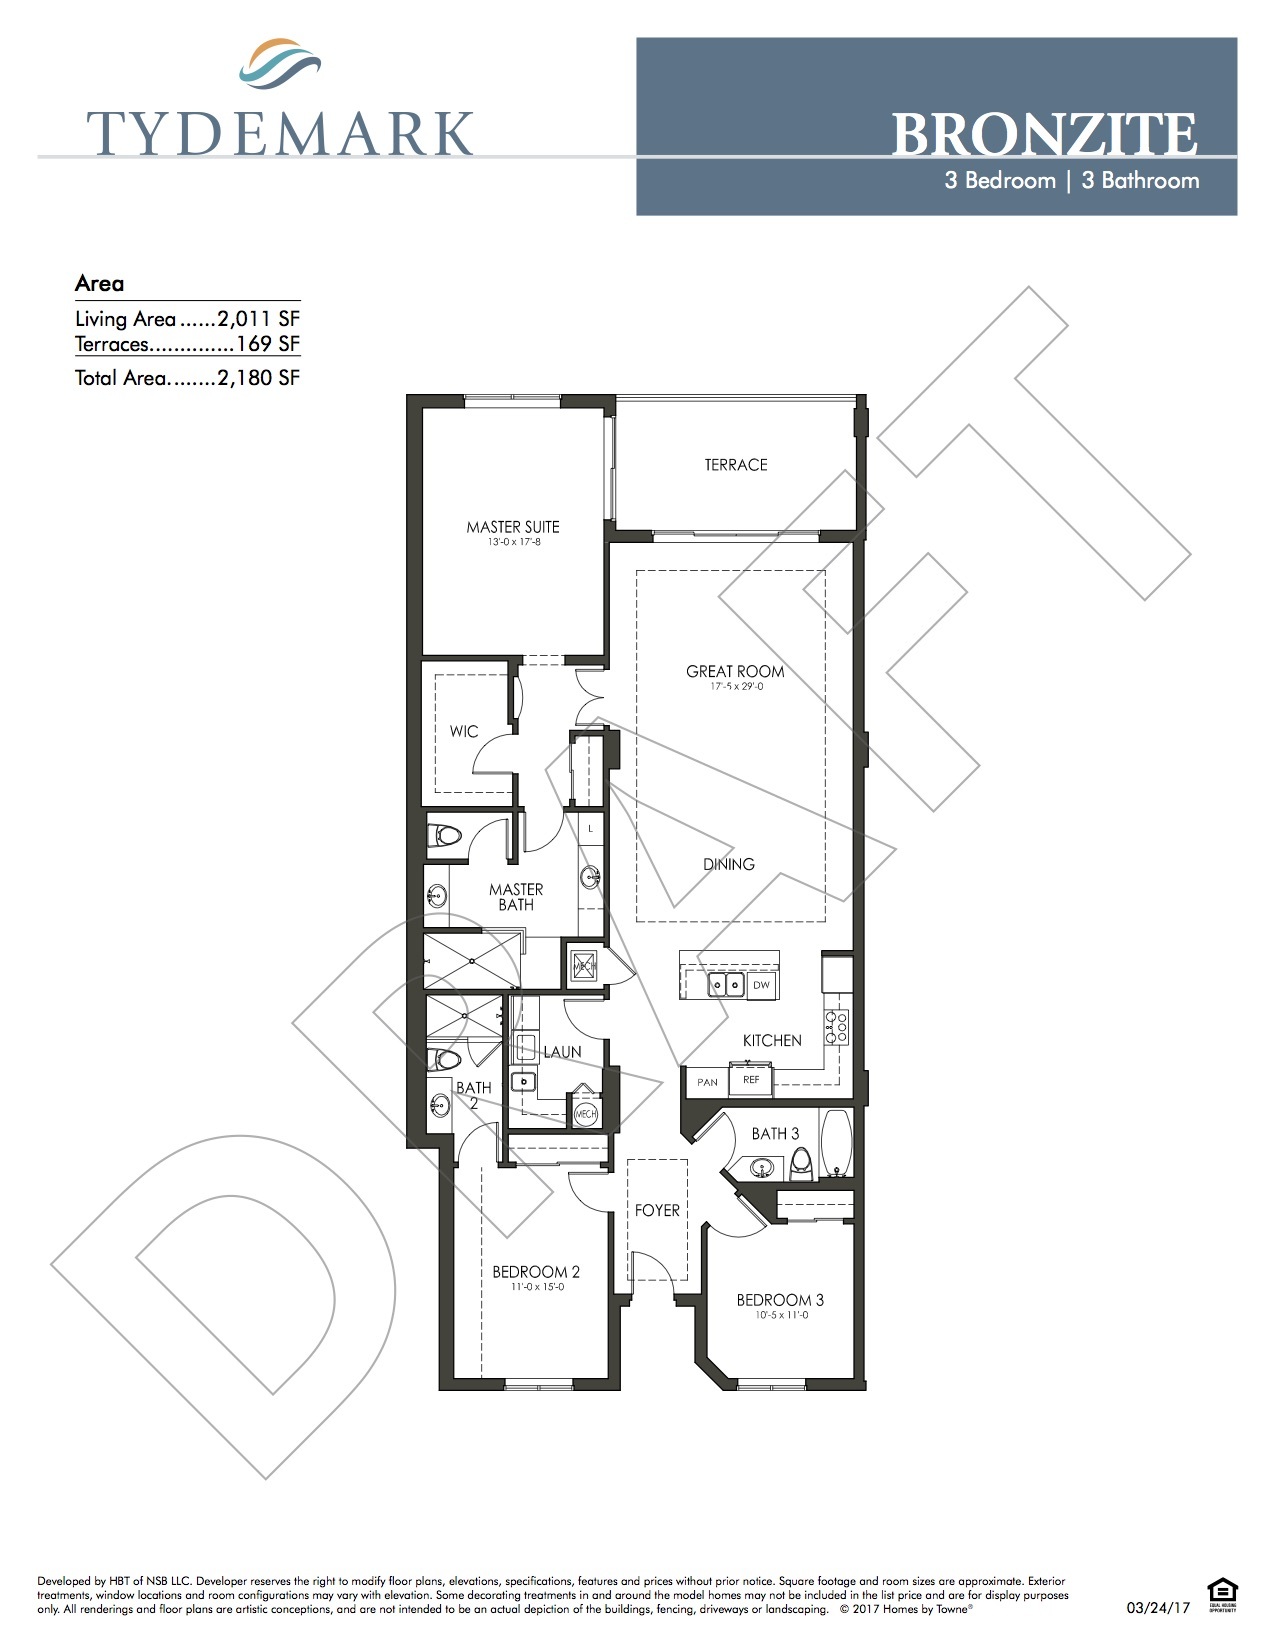 Bronzite floor plan — view layout below